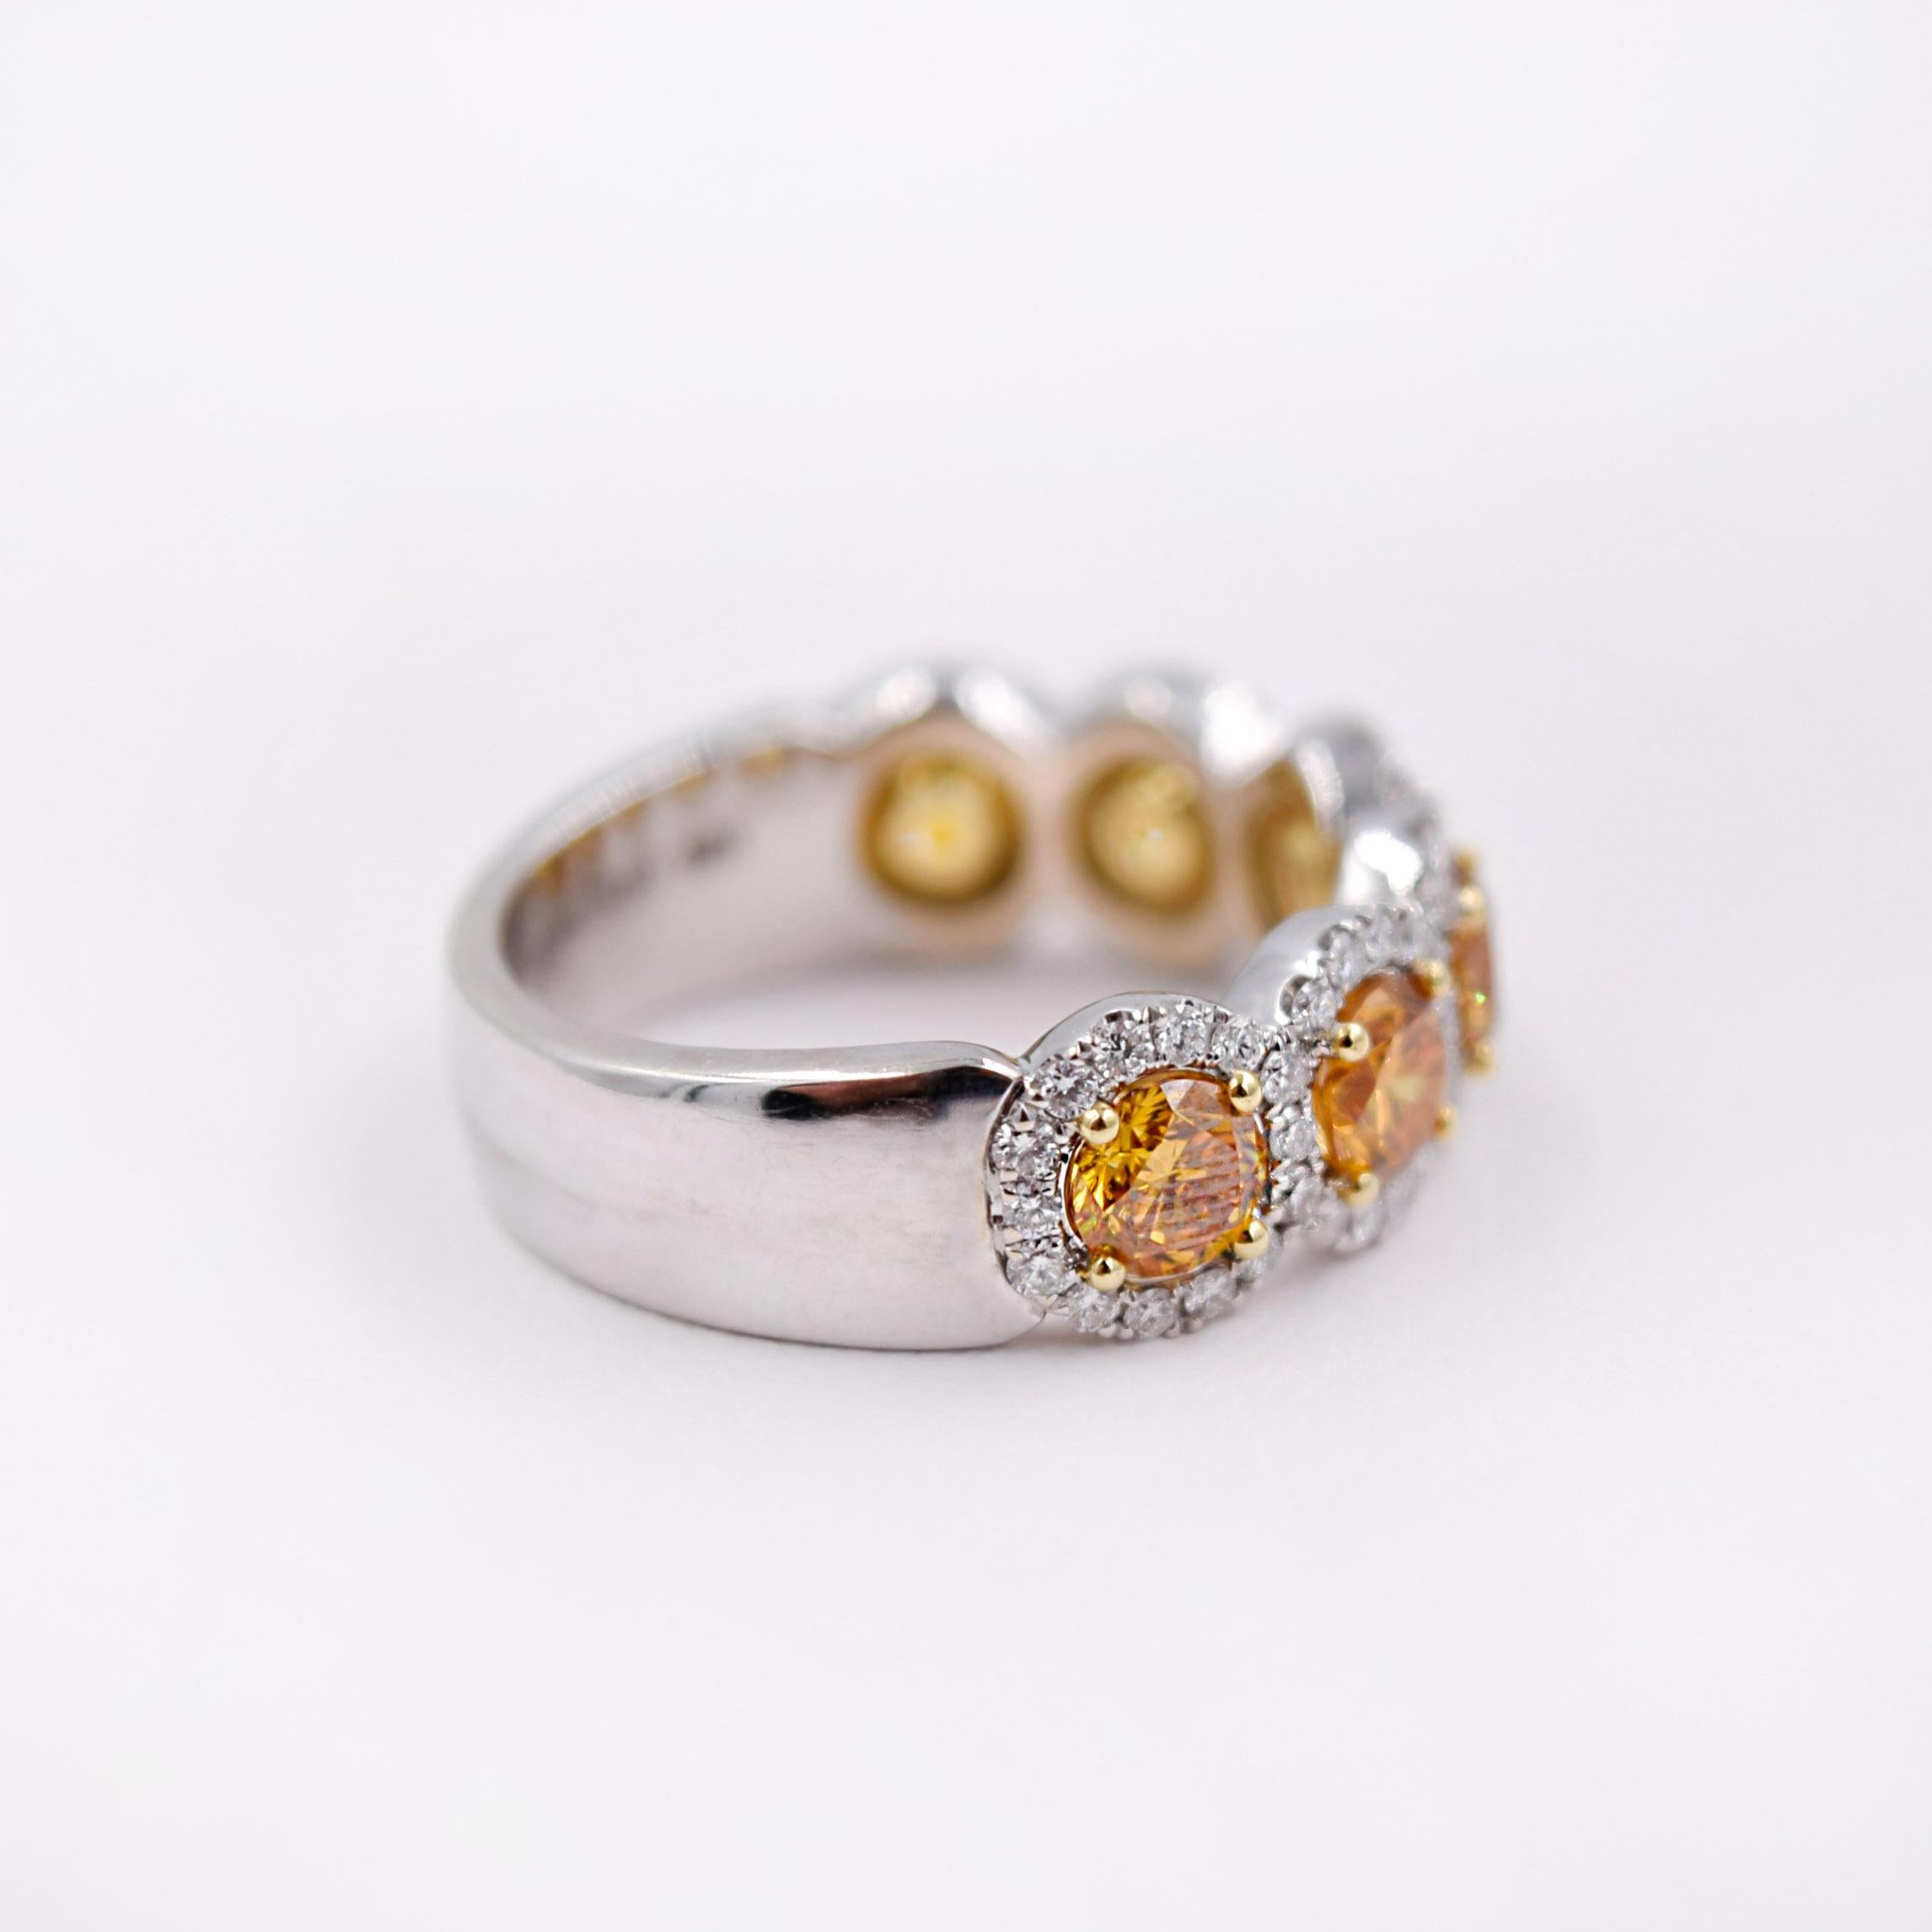 Round Cut GIA Certified 18 Karat Gold Fancy Intense Orange Yellow Diamond Statement Ring For Sale